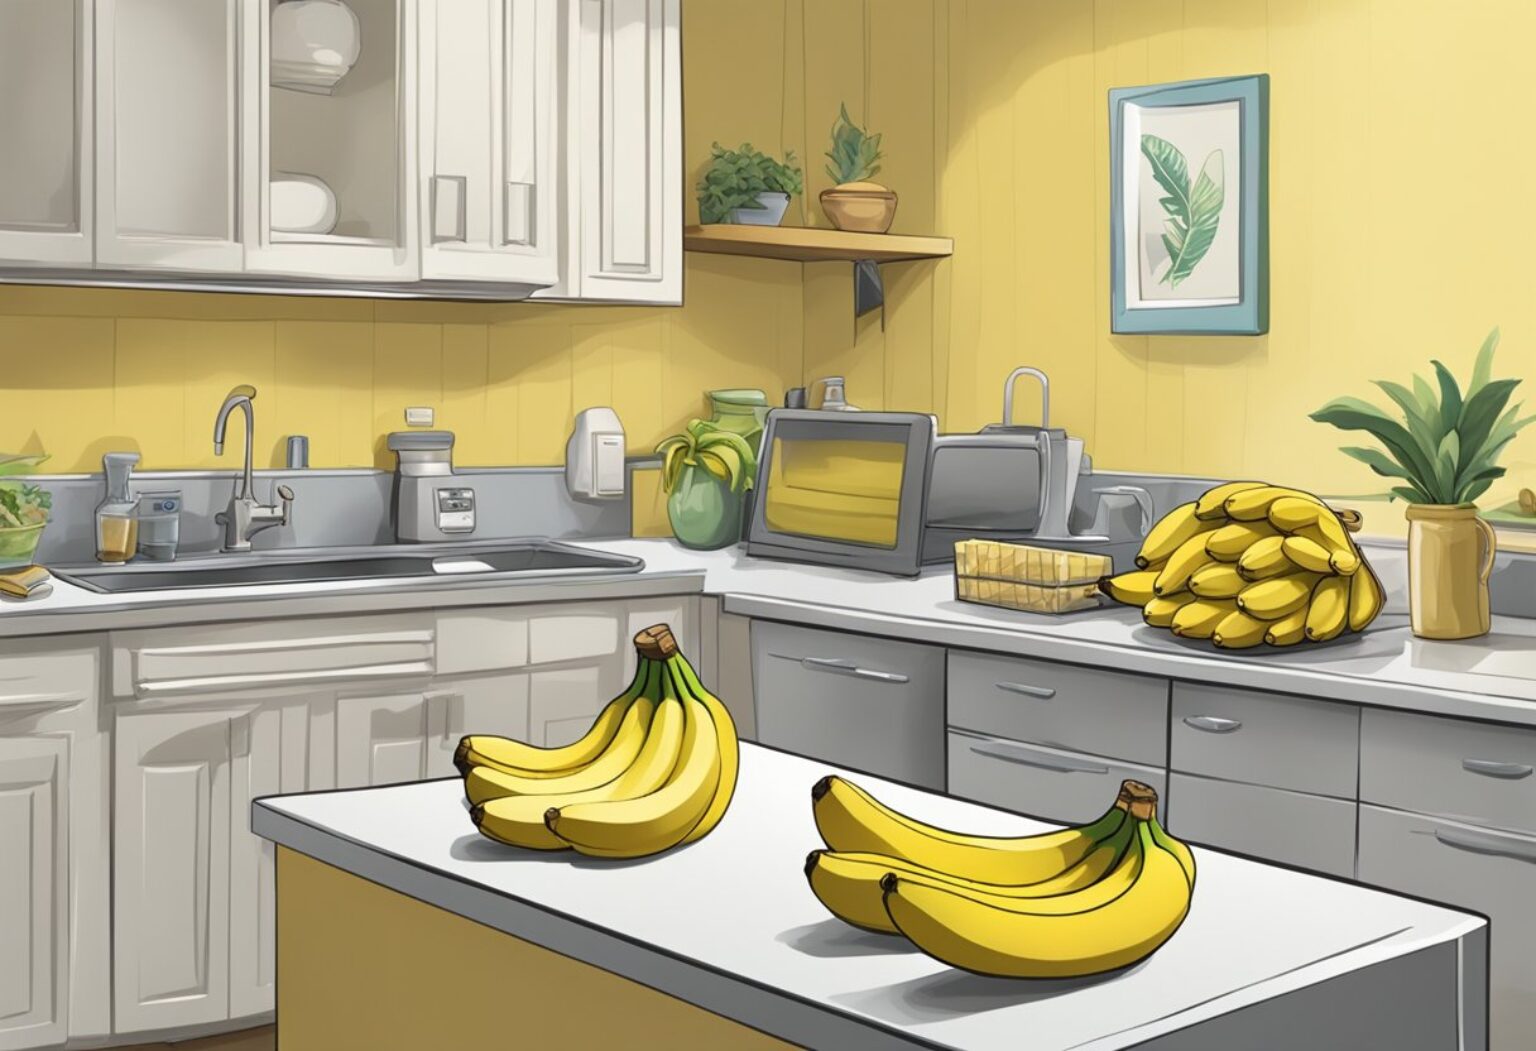 Banana dentro ou fora da geladeira